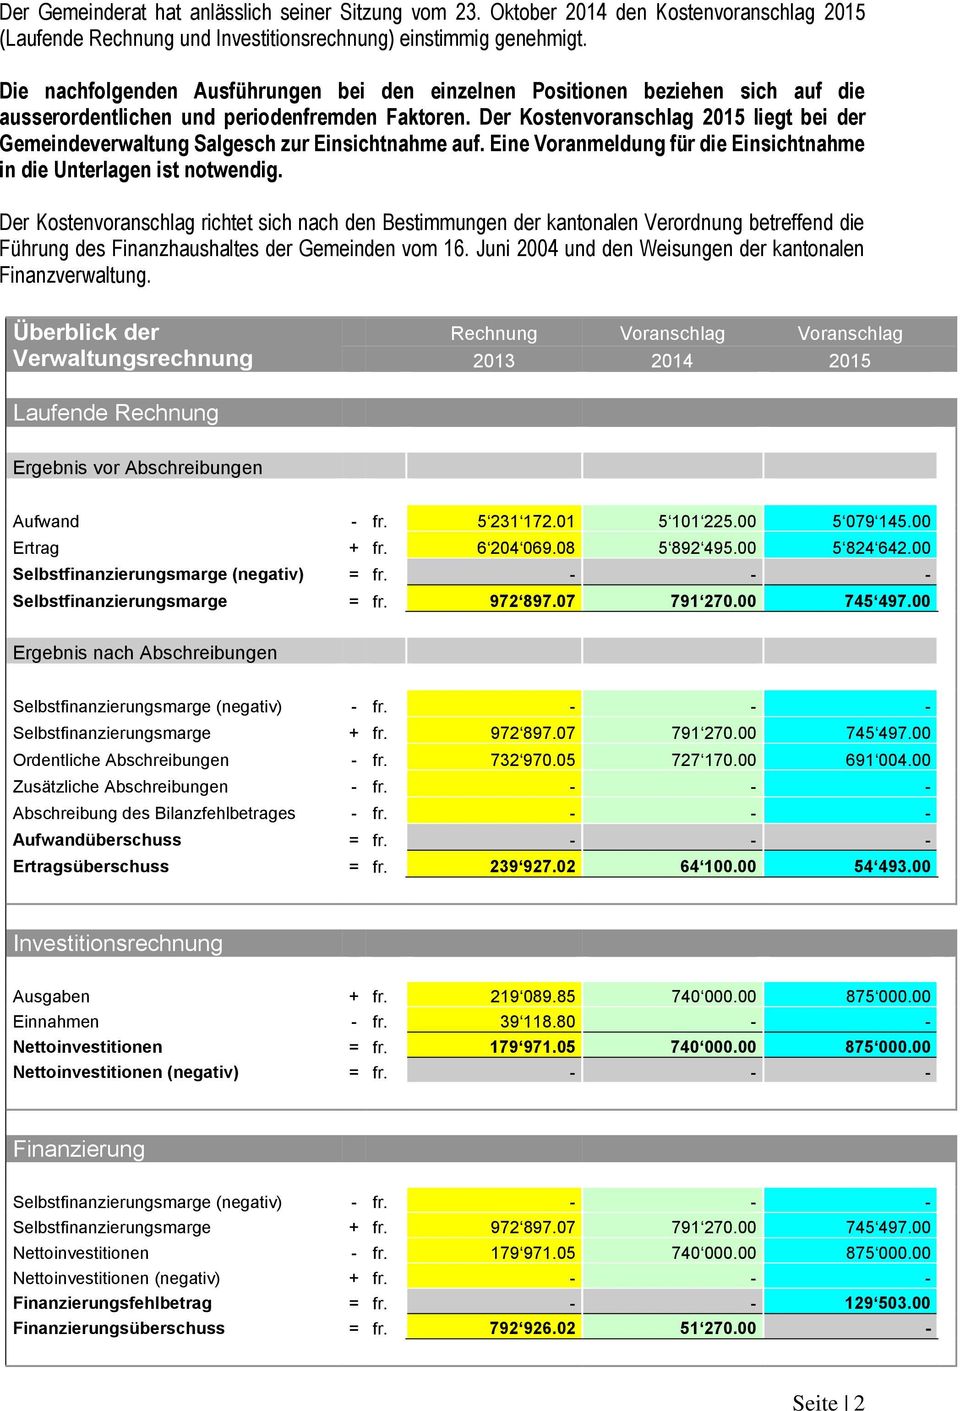 Der Kostenvoranschlag 2015 liegt bei der Gemeindeverwaltung Salgesch zur Einsichtnahme auf. Eine Voranmeldung für die Einsichtnahme in die Unterlagen ist notwendig.